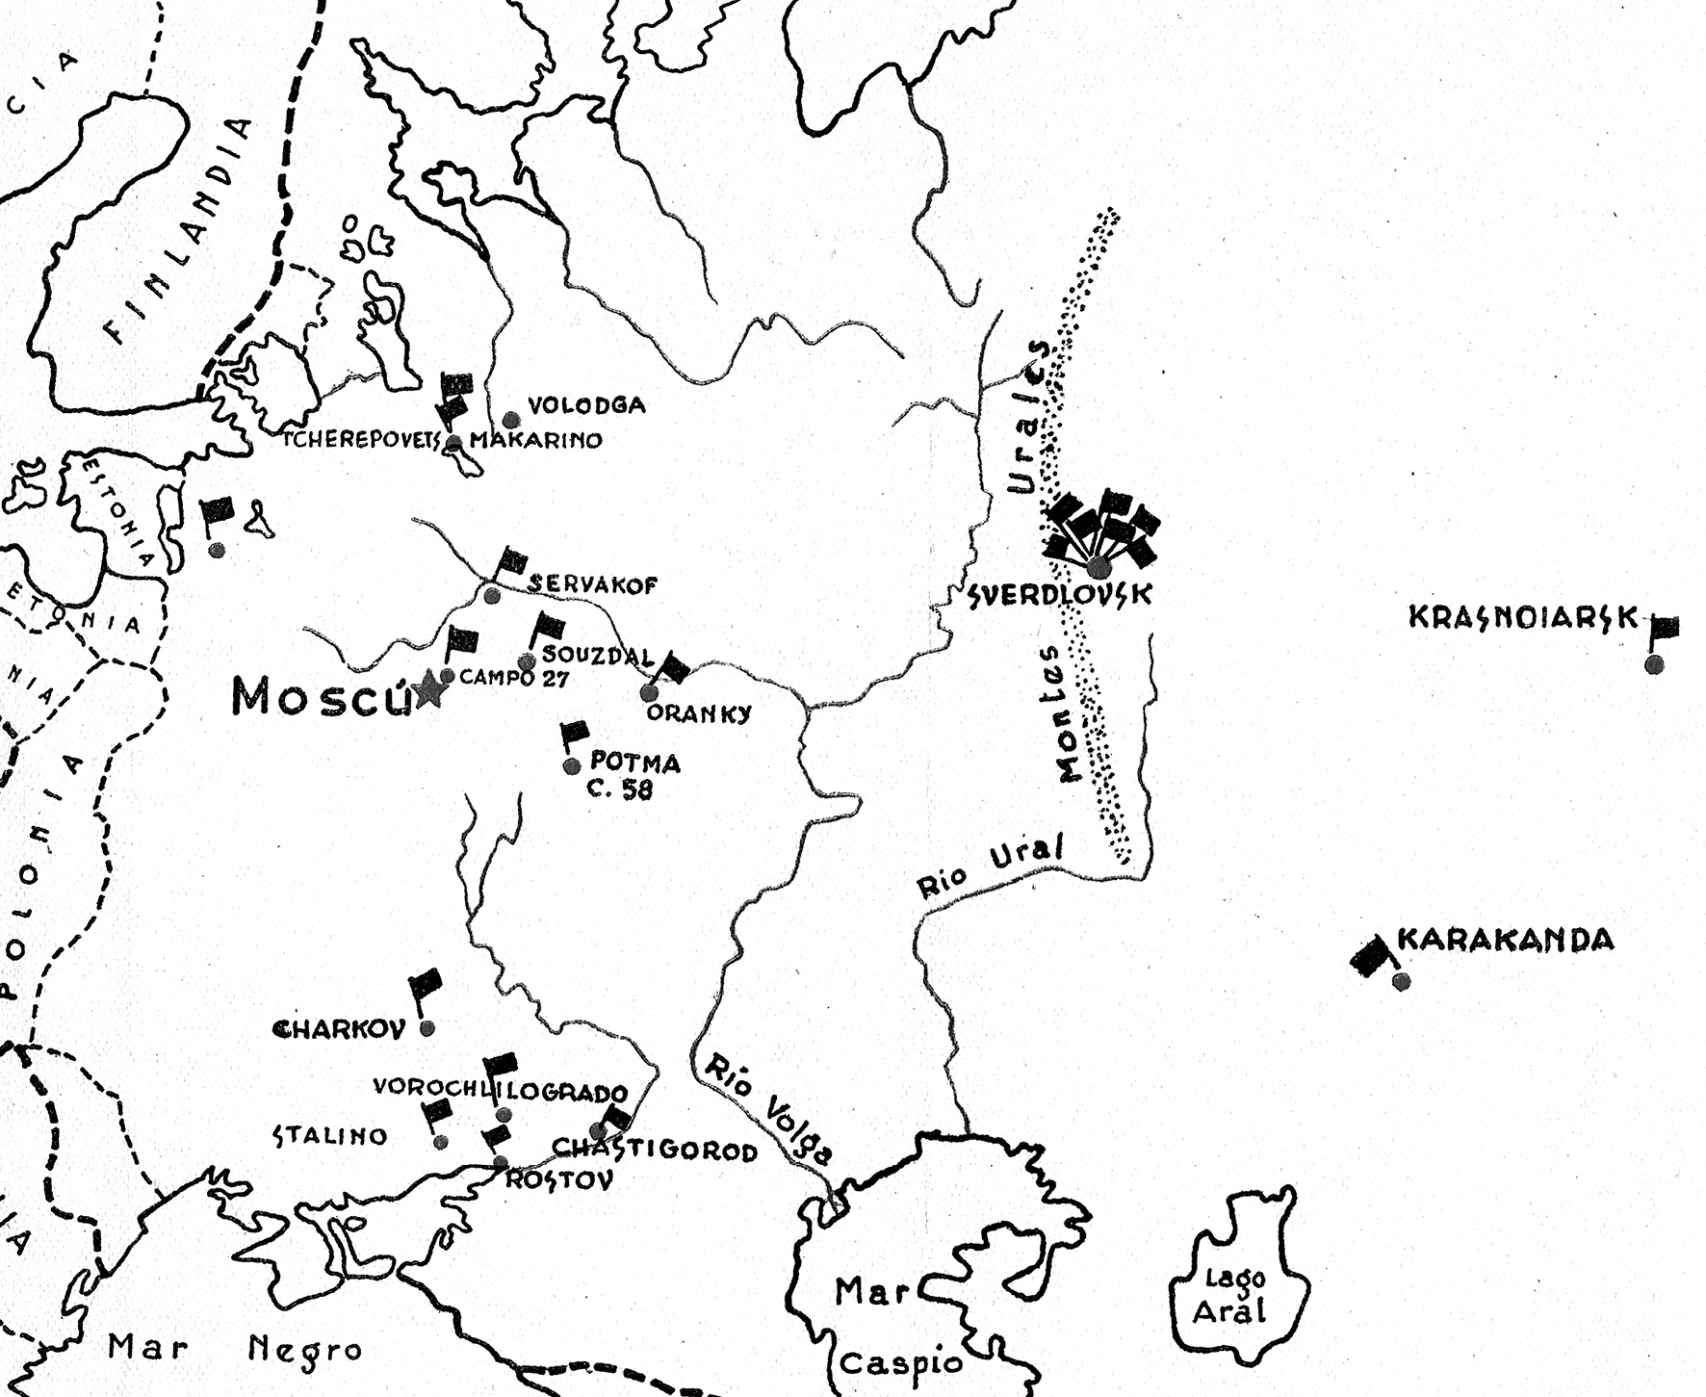 Mapa de los campos soviéticos recorridos por los españoles.